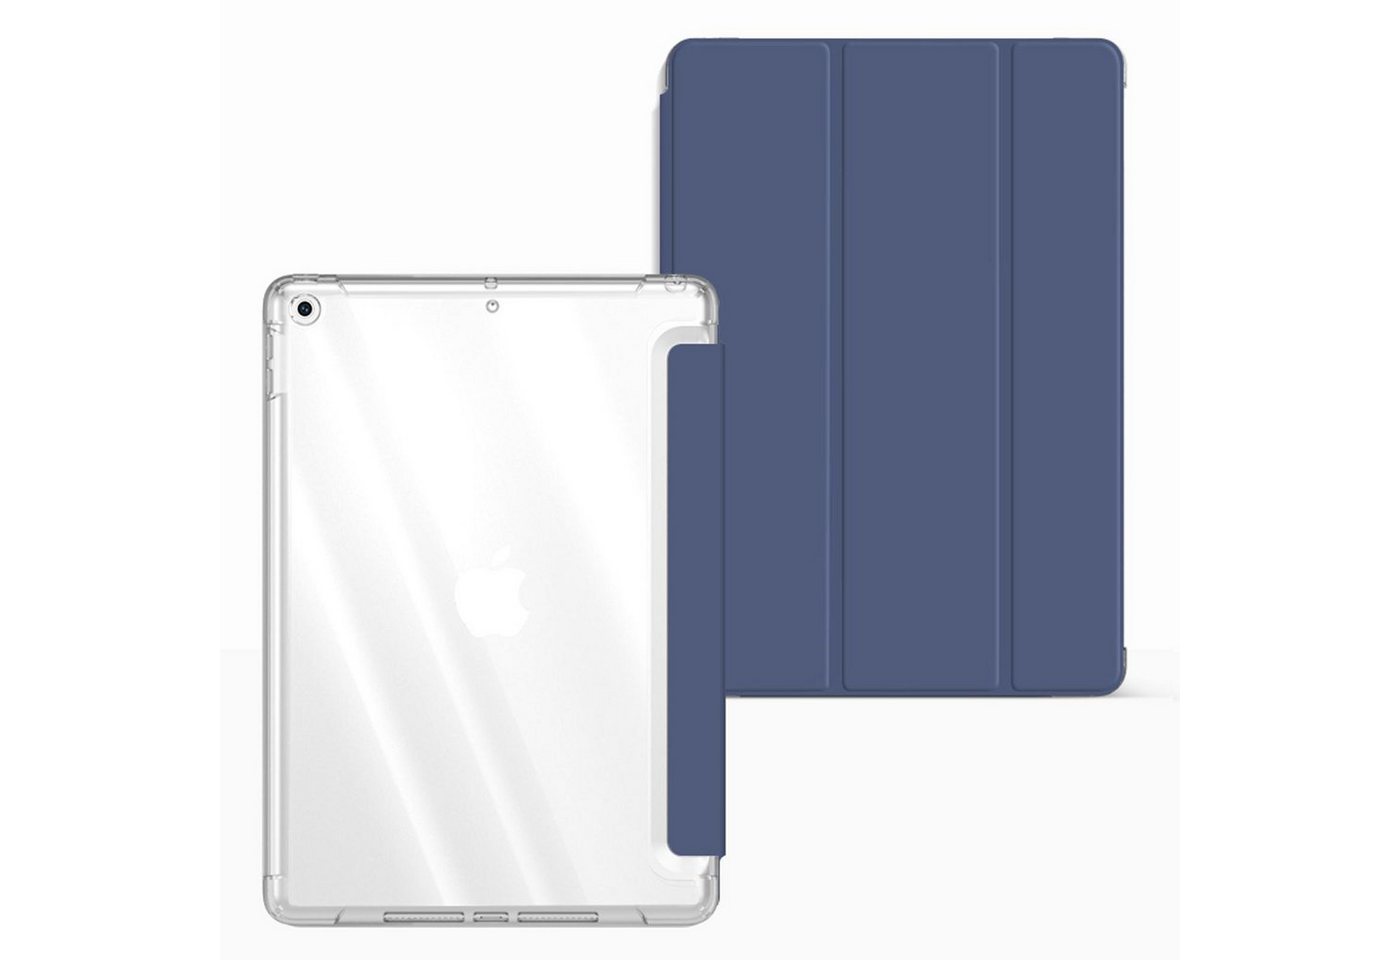 Numerva Tablet-Mappe Smart Cover Tablet Schutz Hülle für Apple iPad Air 2 (9.7 Zoll) 9.7 Zoll von Numerva